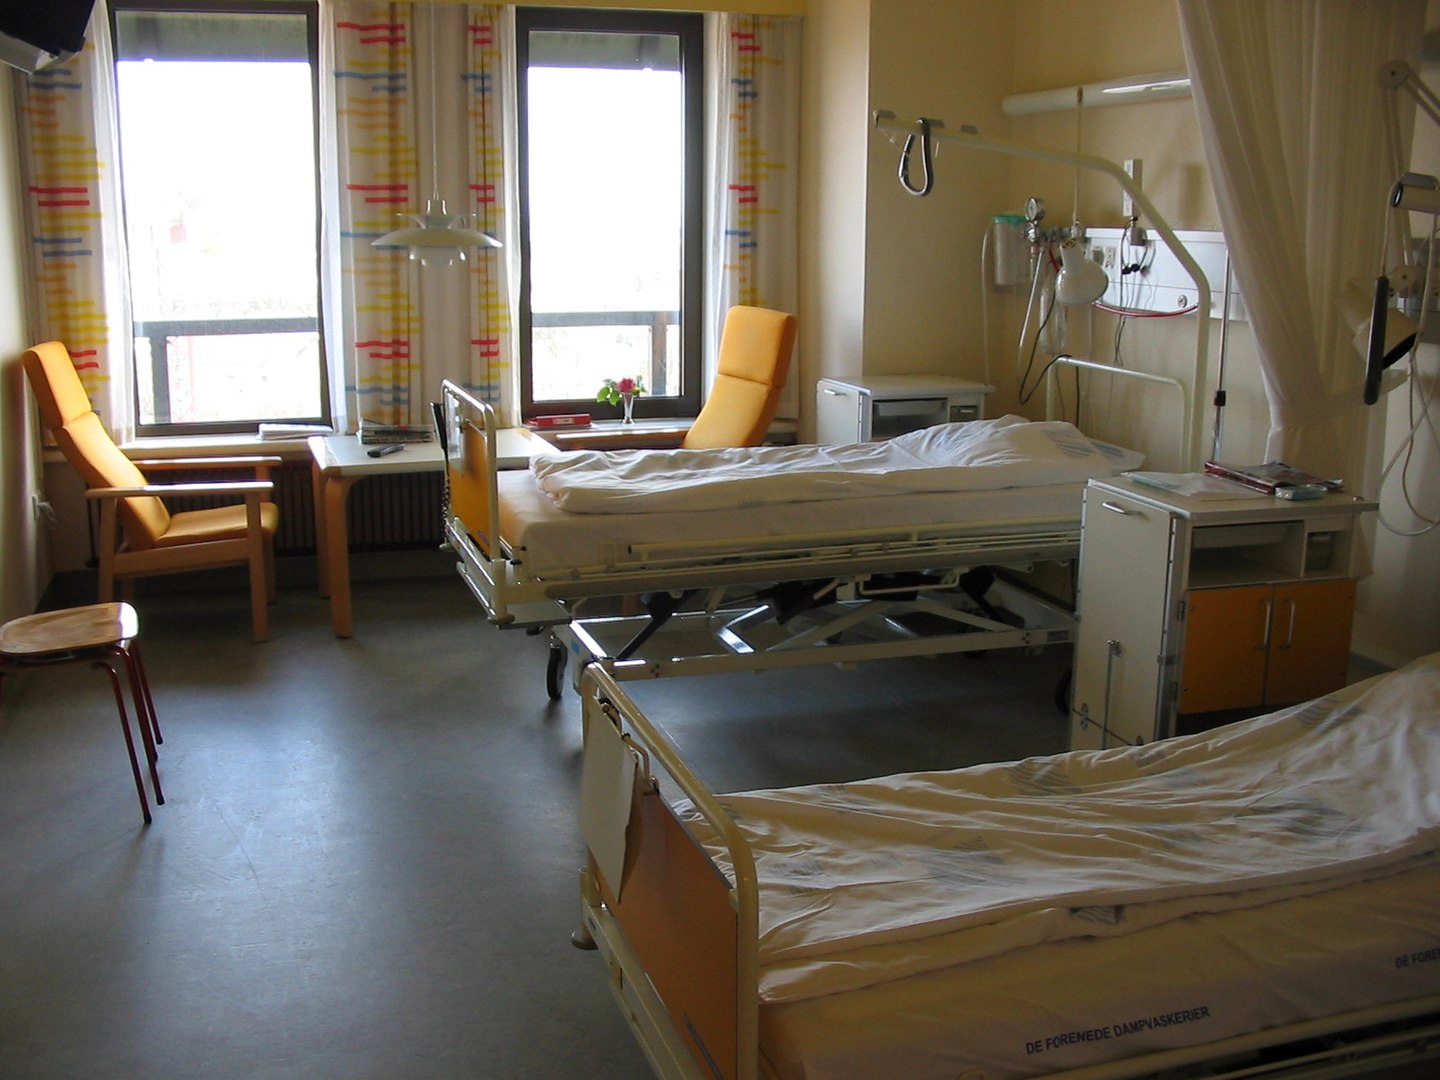 Fotografía de un cuarto de hospital.